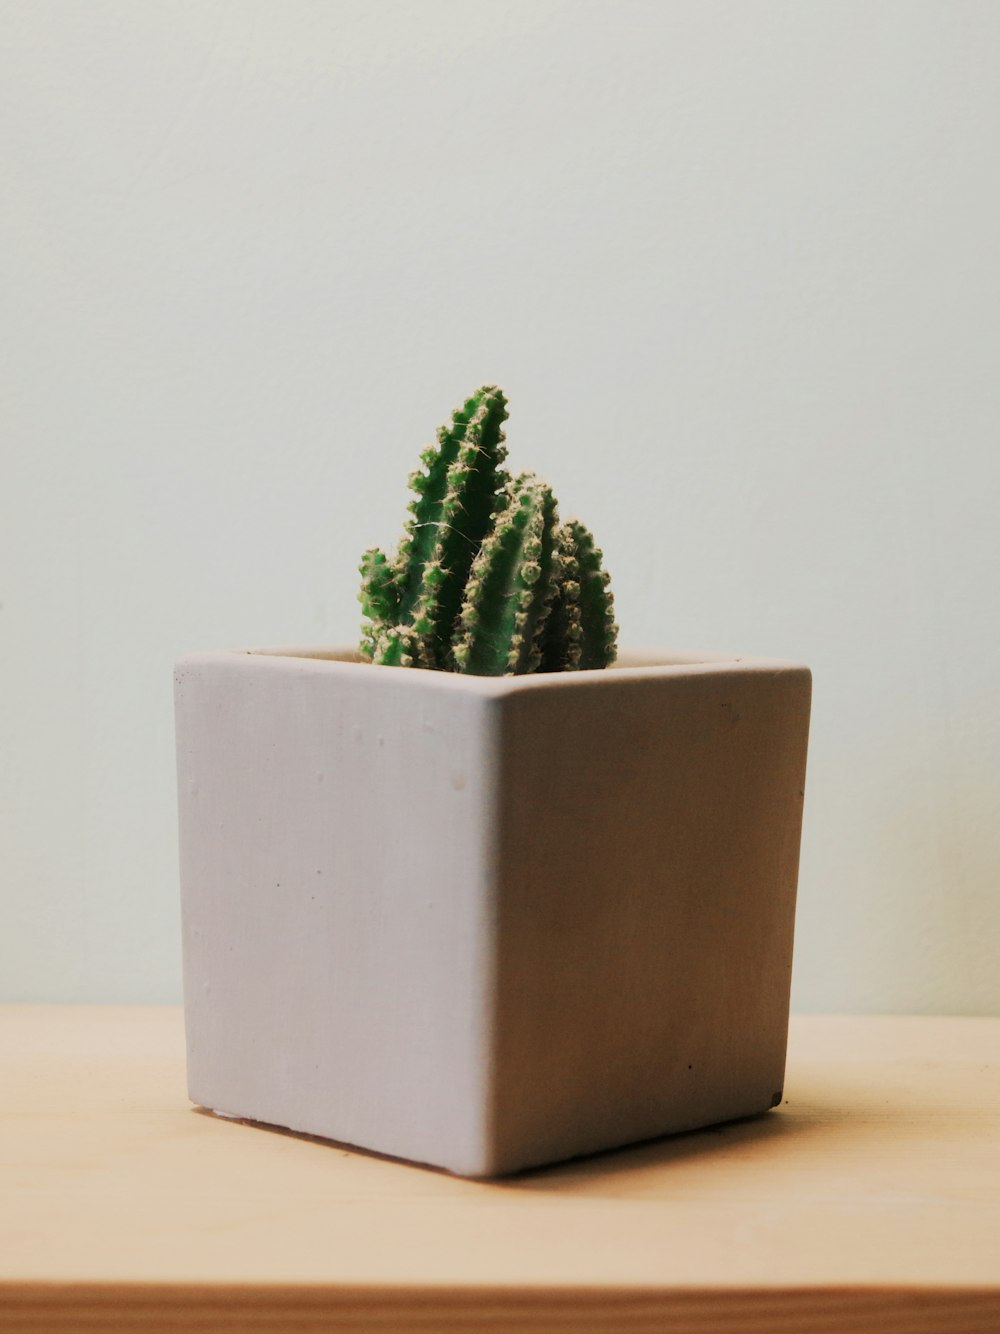 pianta di cactus verde in vaso